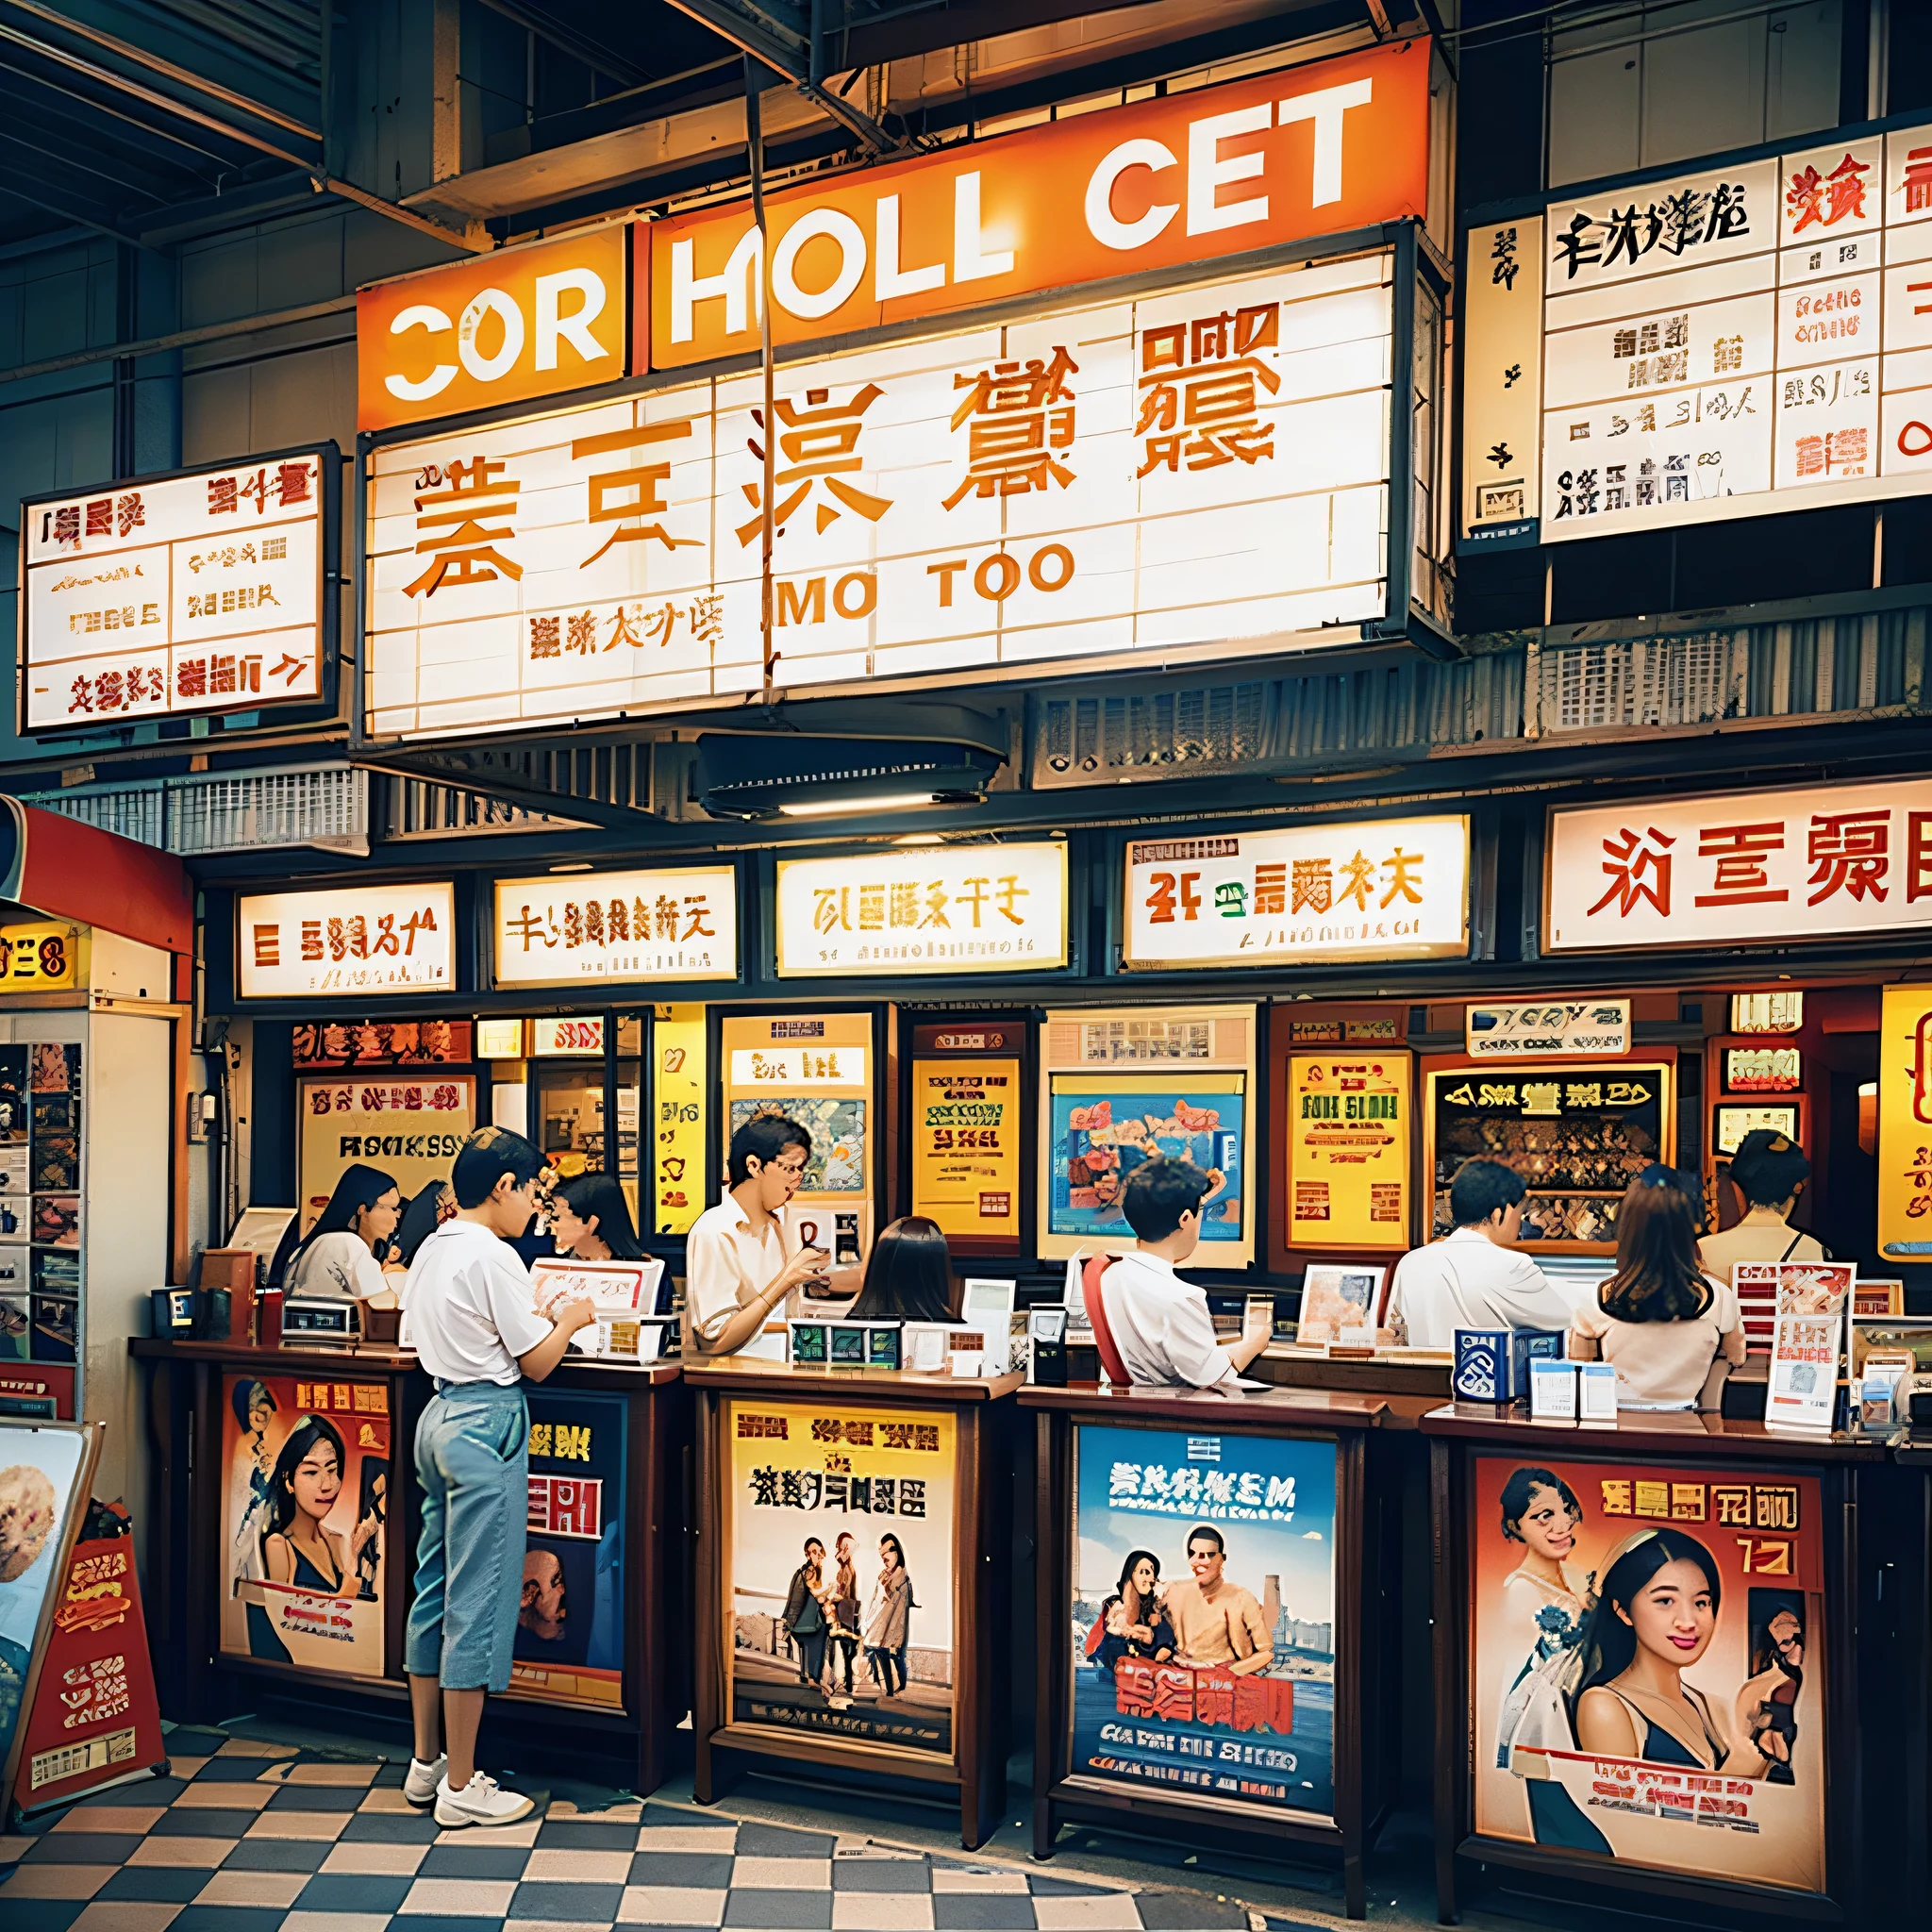 Menschen stehen vor dem Kino und halten Plakate, Straßenfotografie mit Farbfilm, Standbilder aus Kowloon, 35mm - Breite 1920 - Höhe 1080, Vintage-Filme, Hyperrealistische Filmfotografie, Farbfilmfotografie, Filmfotografie in den 1970er Jahren, Farbfilmfotografie 1970s, arbeiten. Autor：Leng Jun